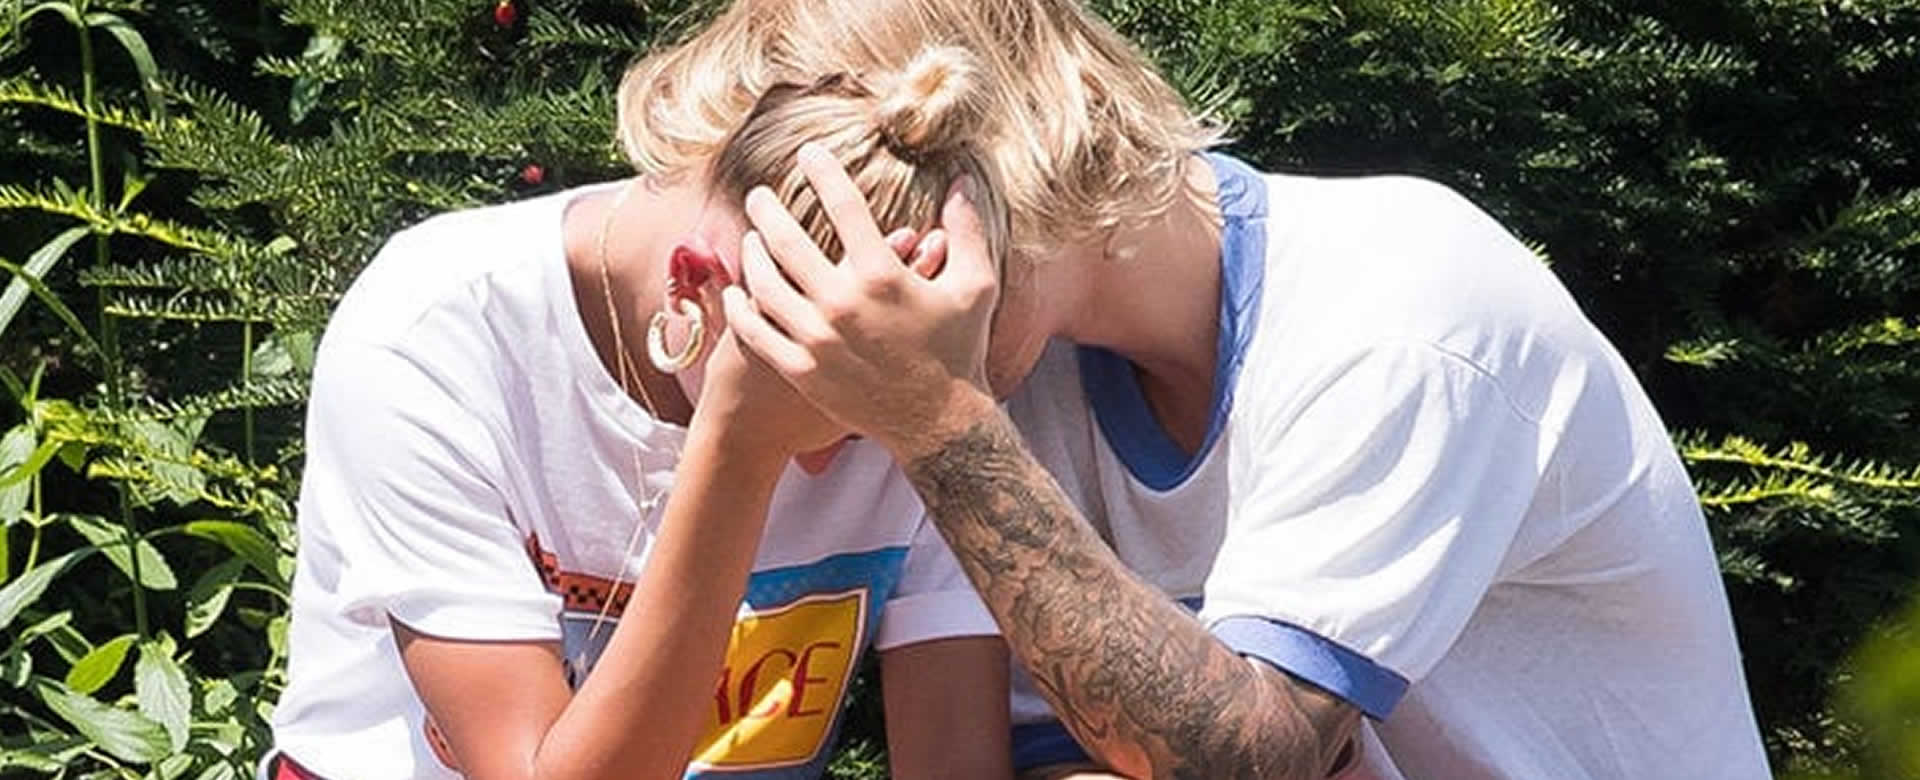 Justin Bieber y Hailey Baldwin preocupan a fans al ser captados llorando